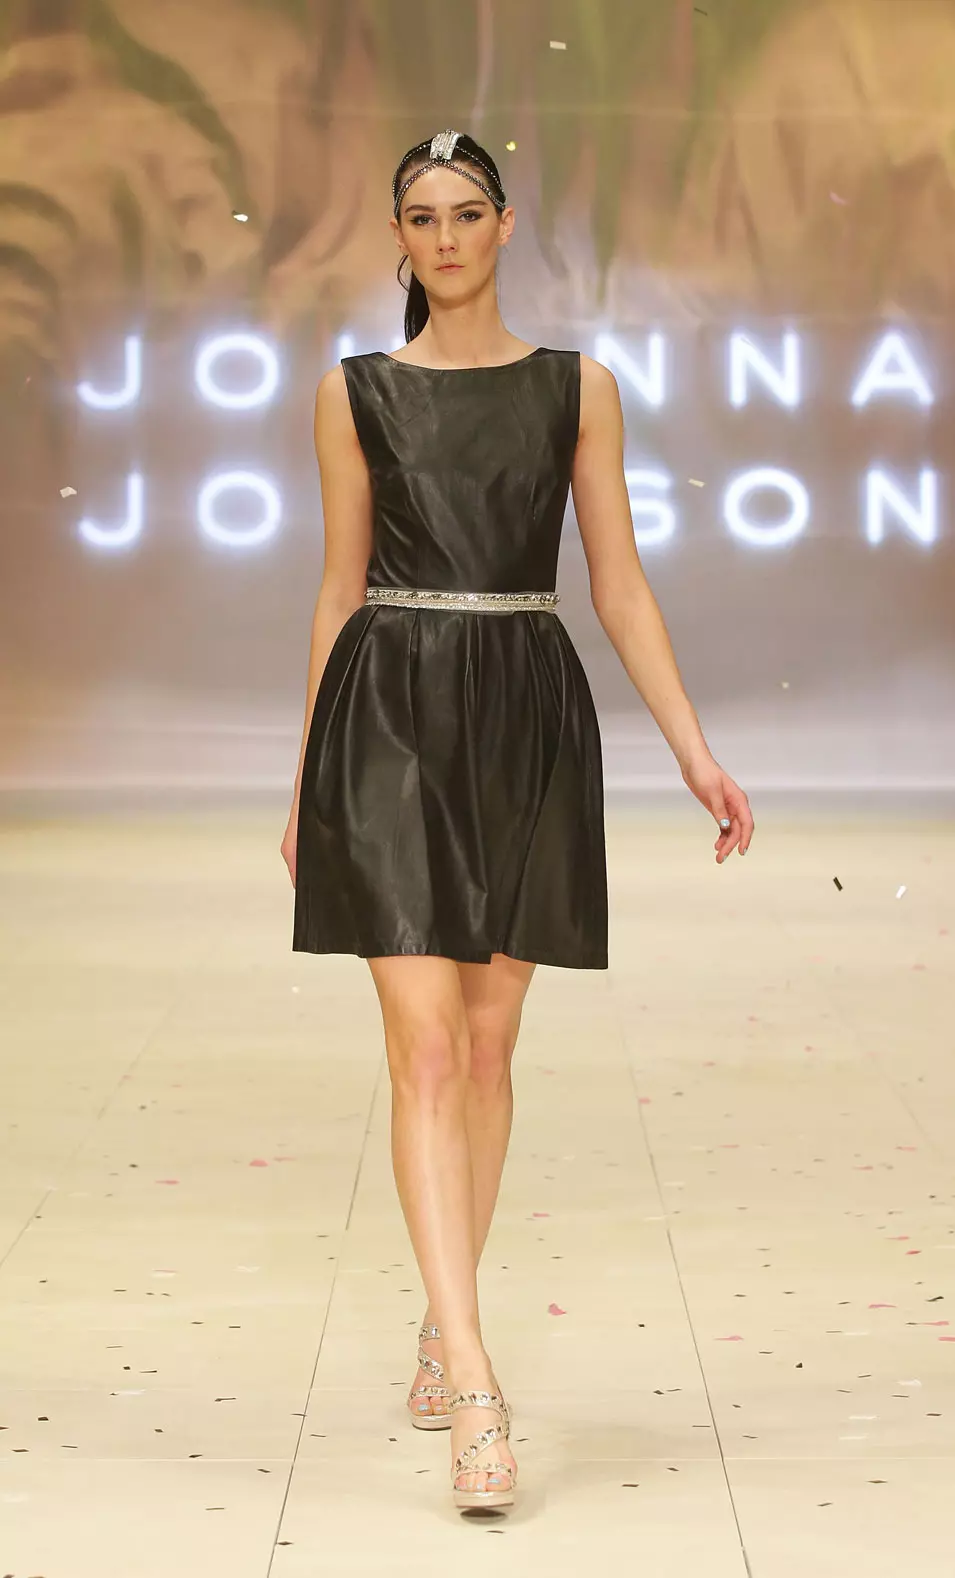 תצוגת ג'ואנה ג'ונסון בפסטיבל האופנה, סידני, אוסטרליה, 21 אוגוסט 2012